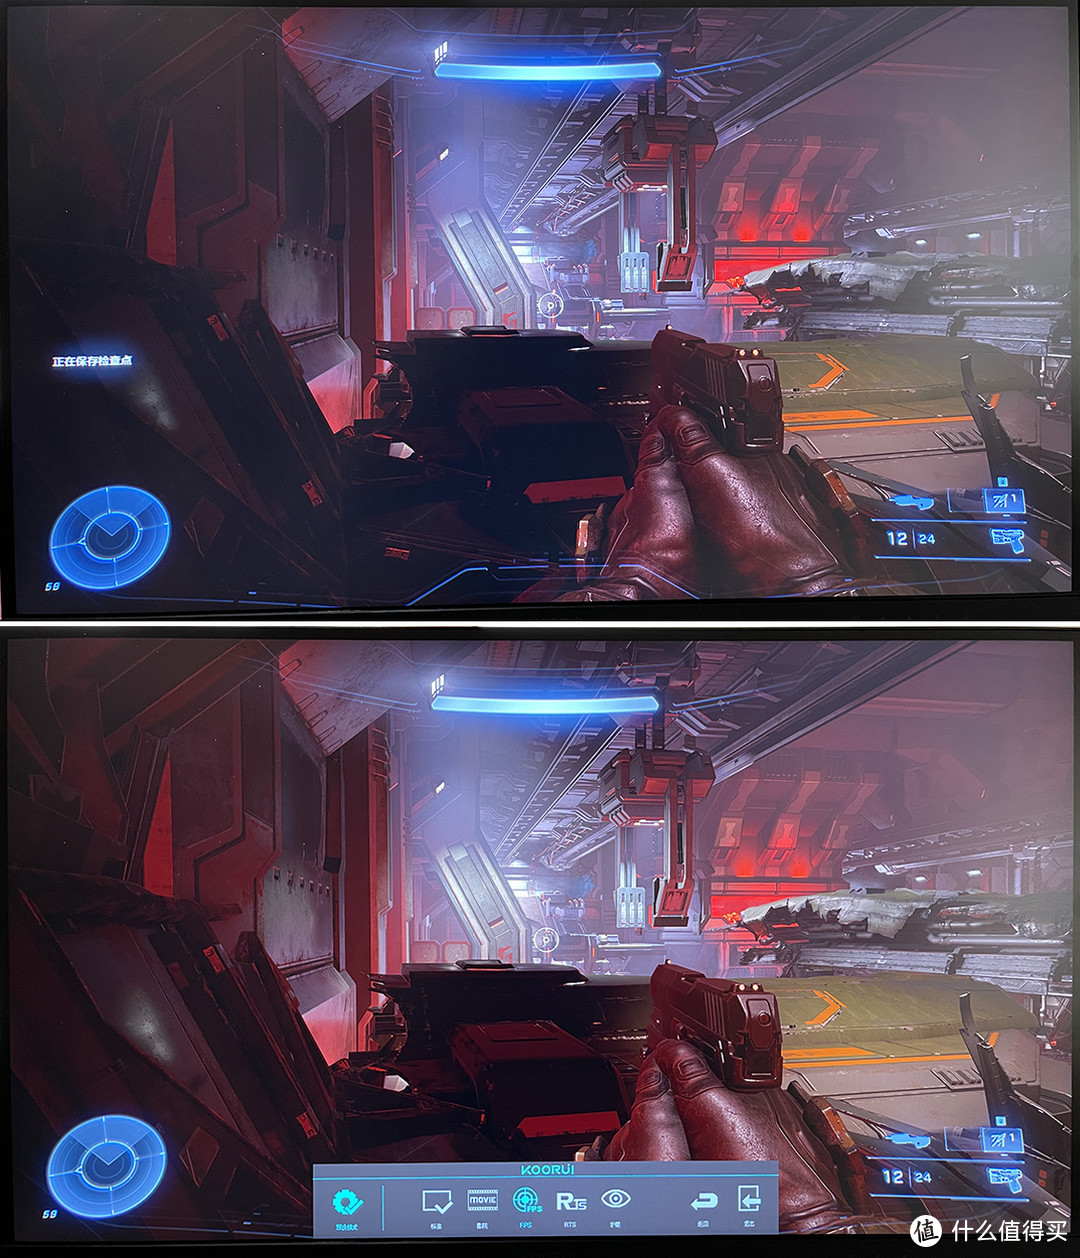 以FPS模式为例，上图未开启左侧细节不清，下图开启左侧细节得到明显提升。